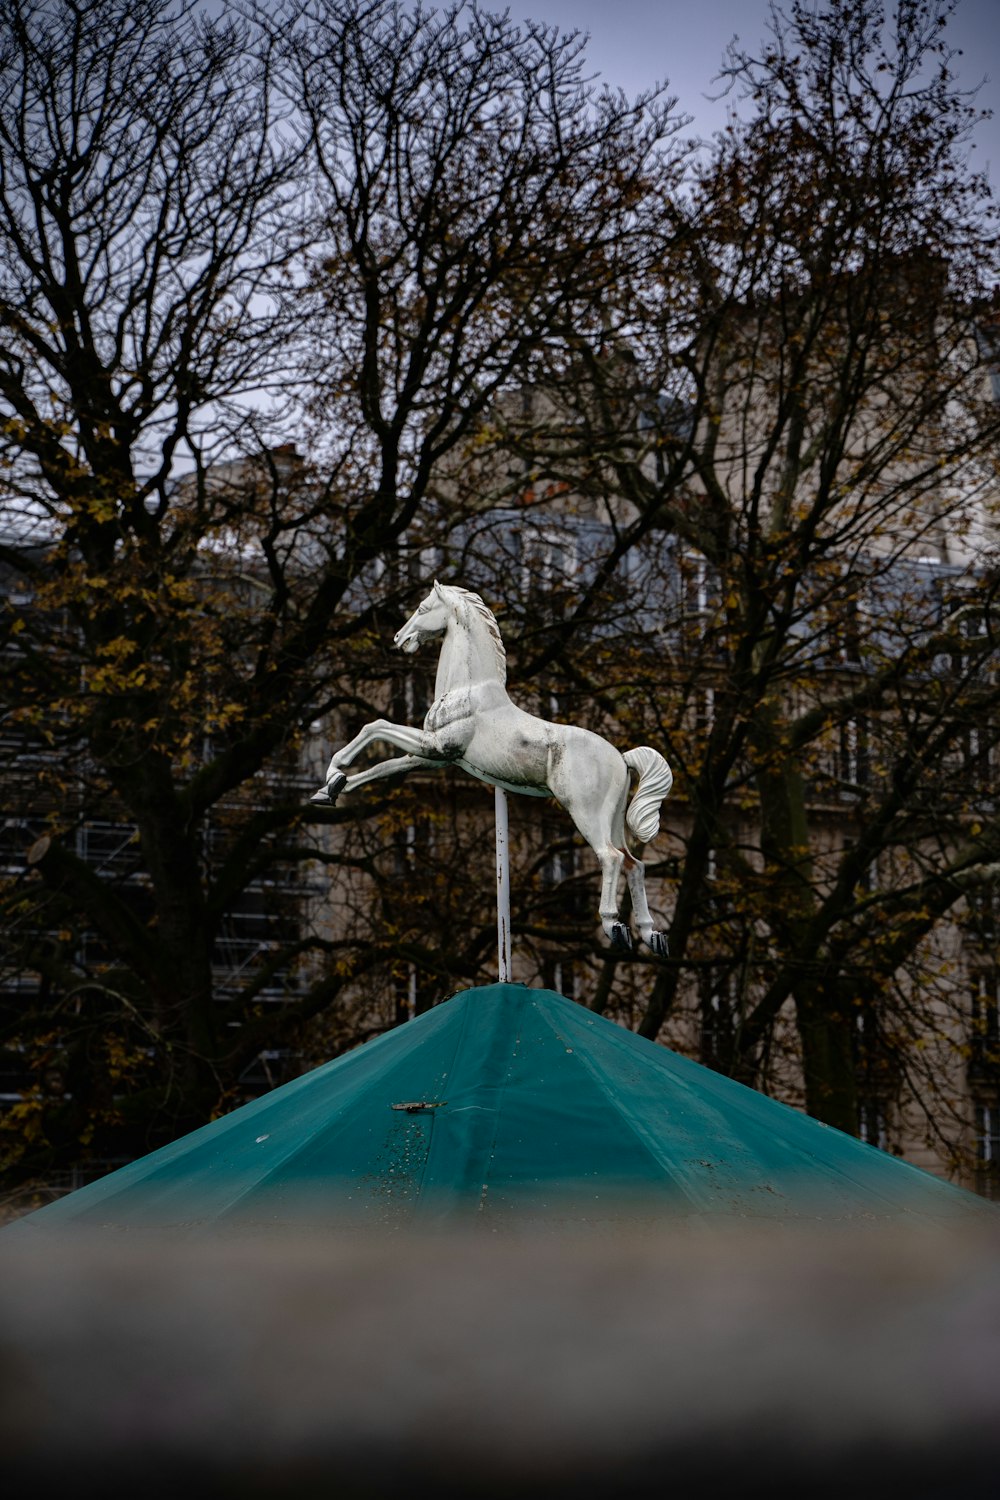 Eine weiße Pferdestatue auf einem grünen Dach